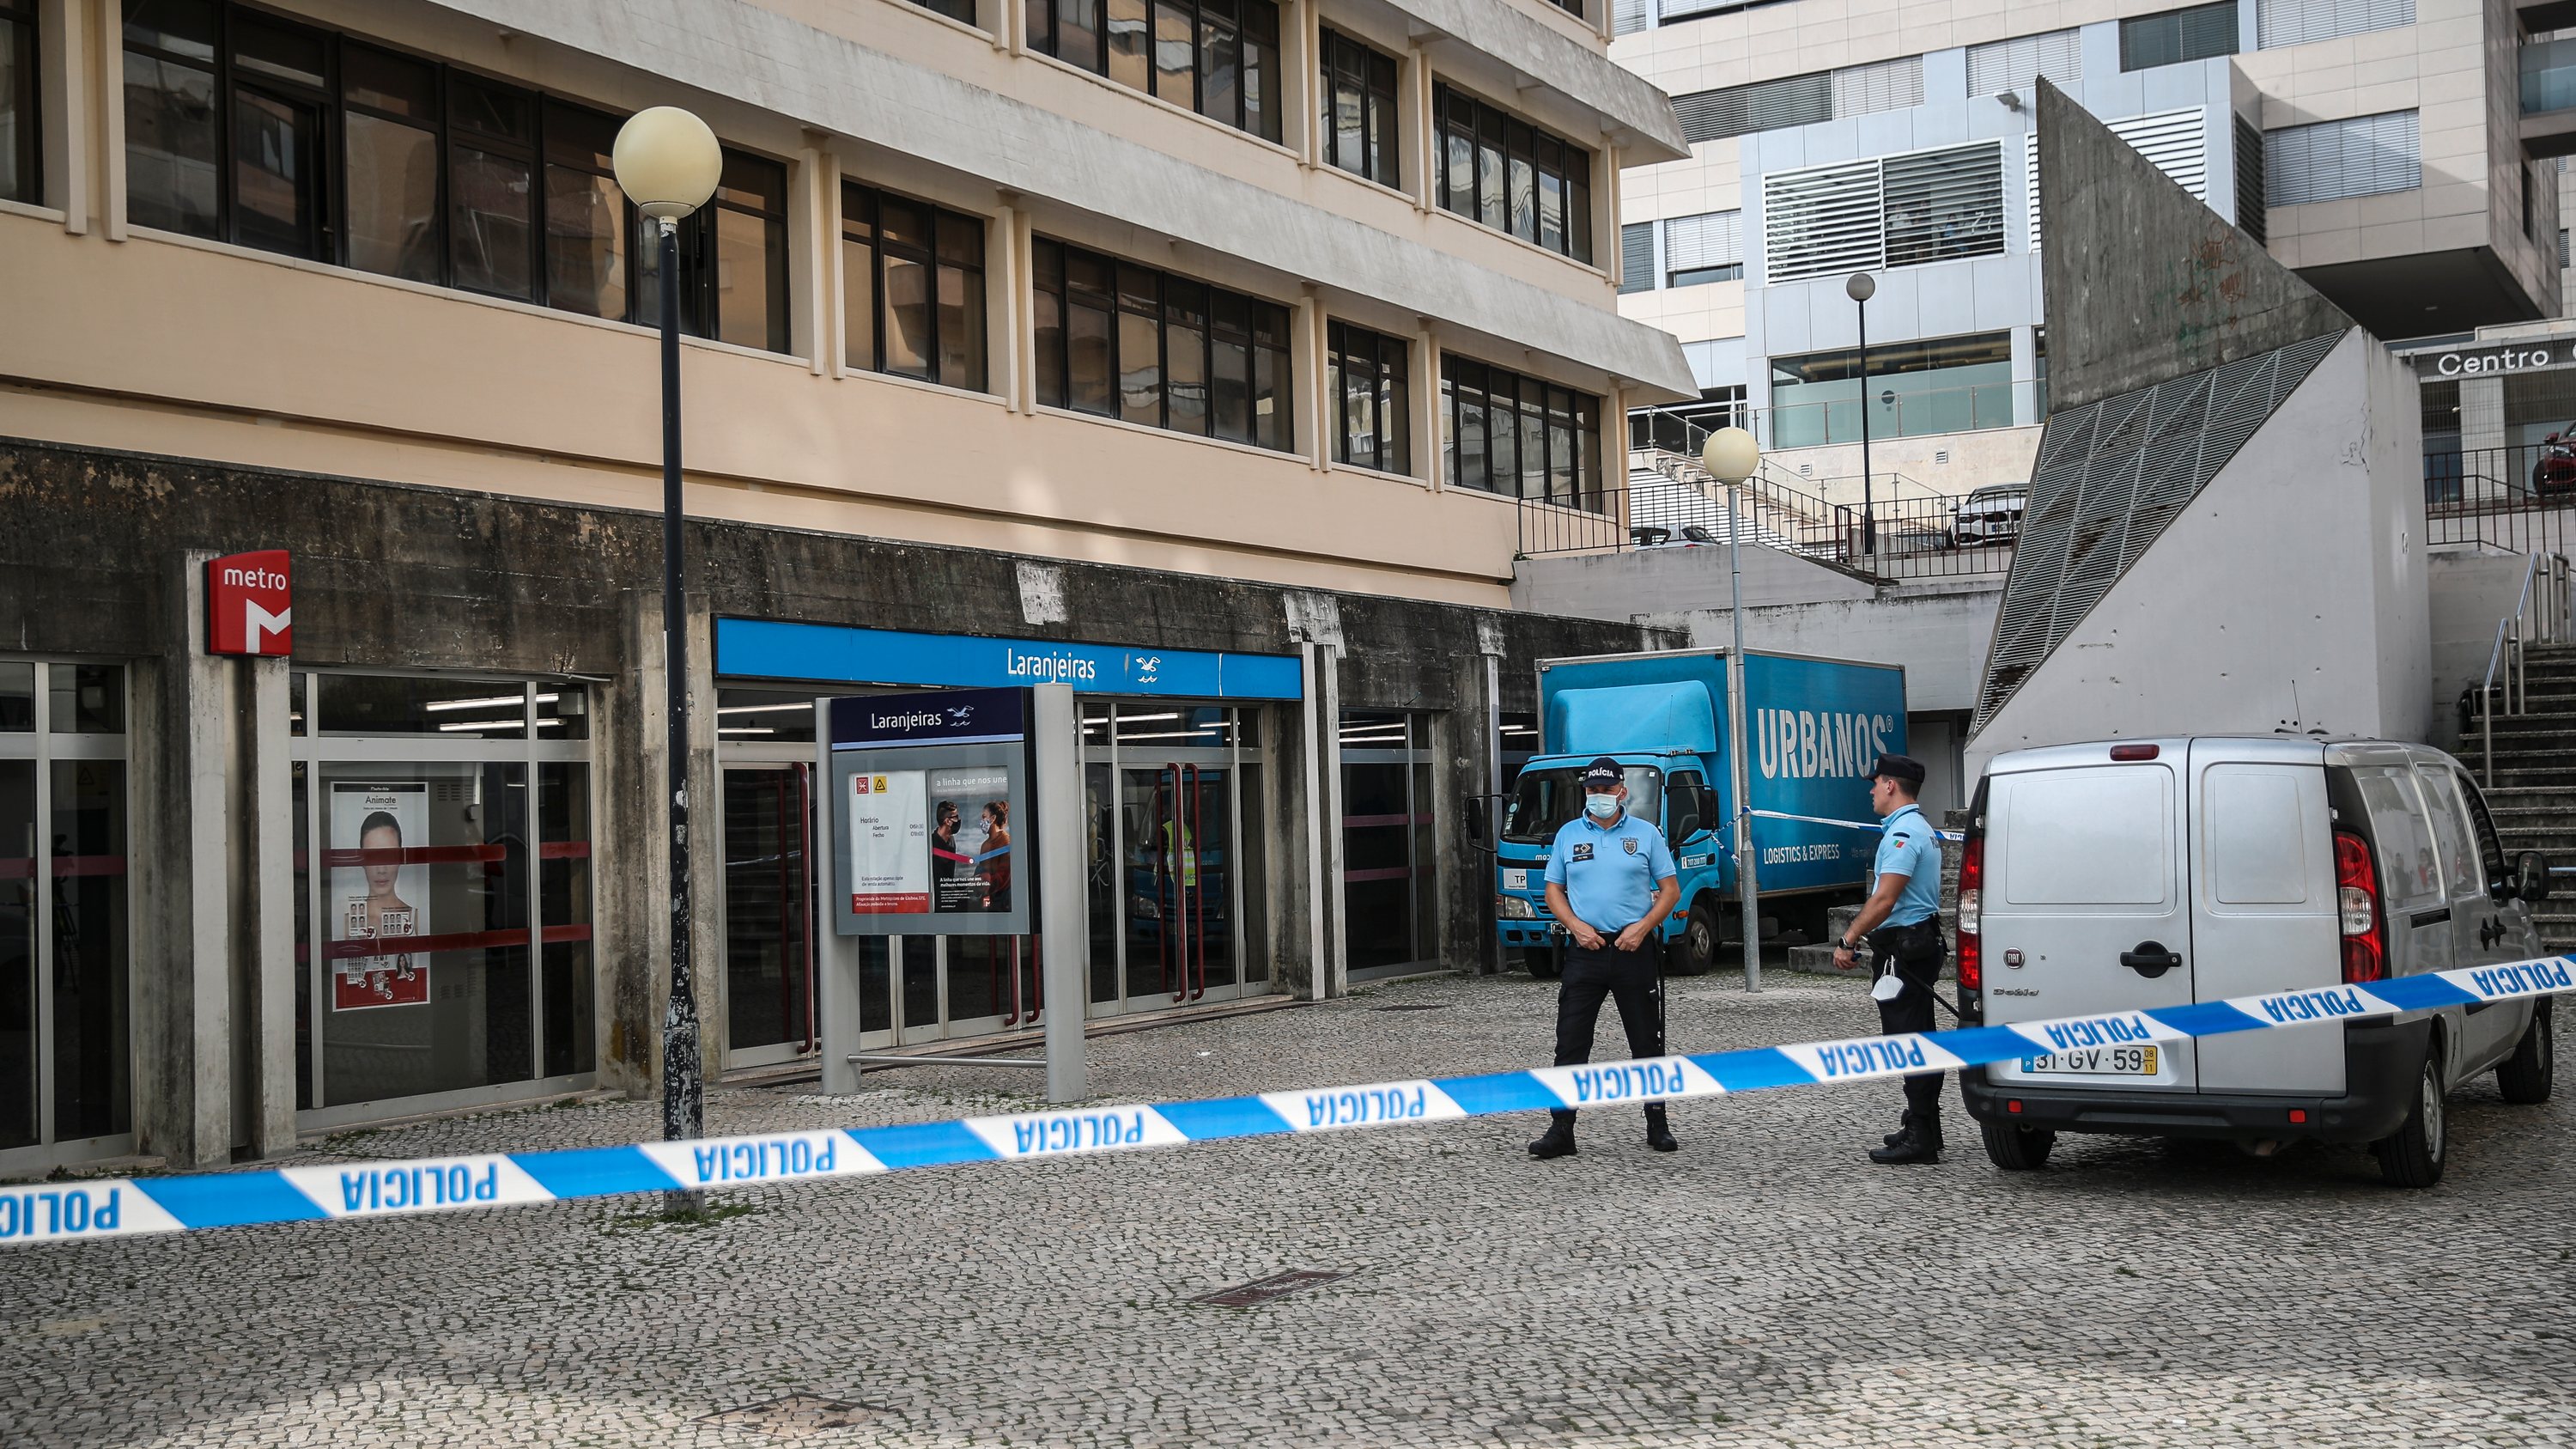 Homicídio de jovem no metro nas Laranjeiras. Lisboa, 20 de Outubro de 2021. FILIPE AMORIM/OBSERVADOR